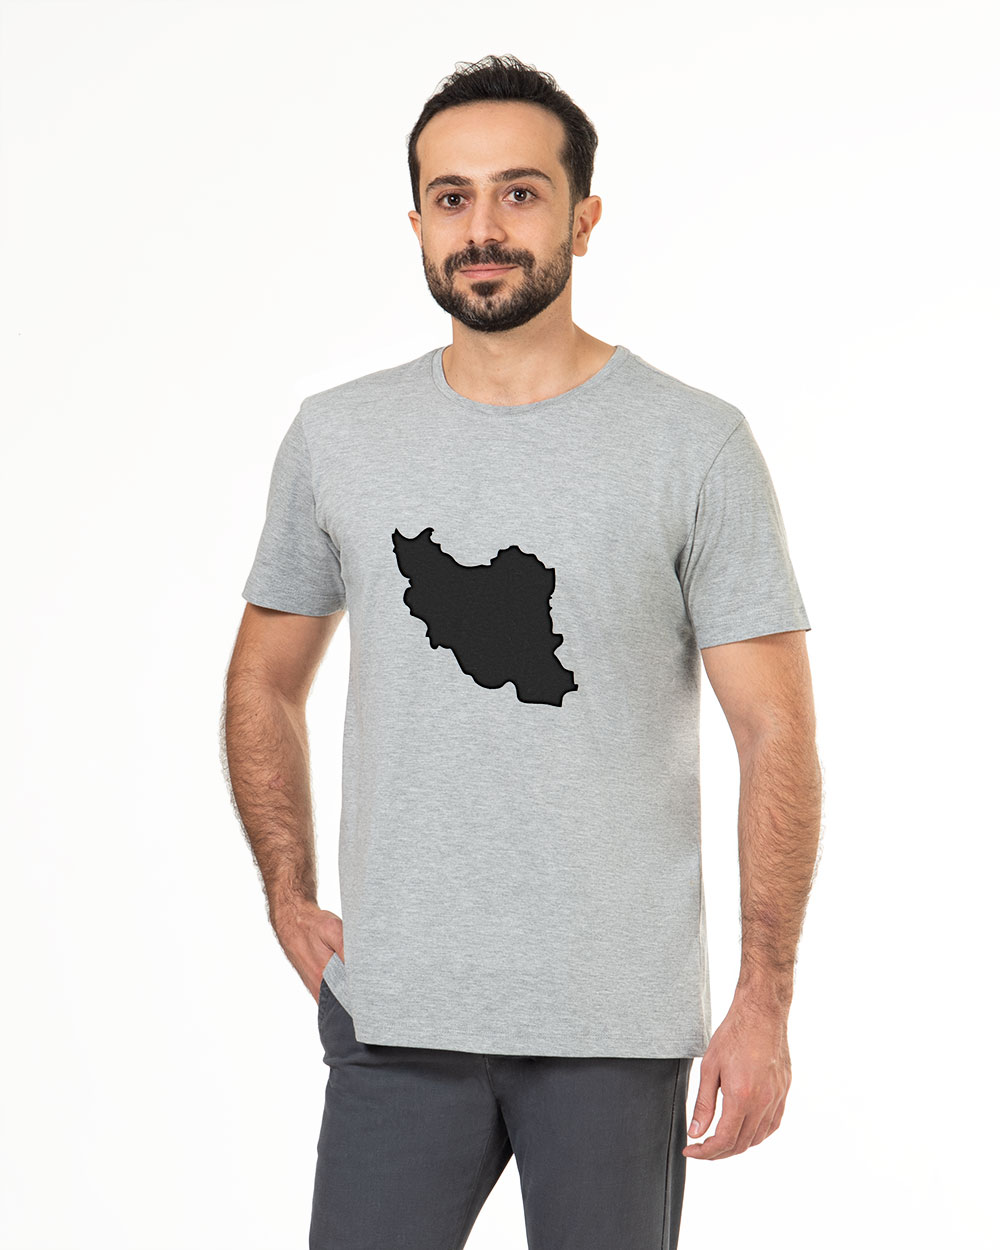 تی شرت ایران